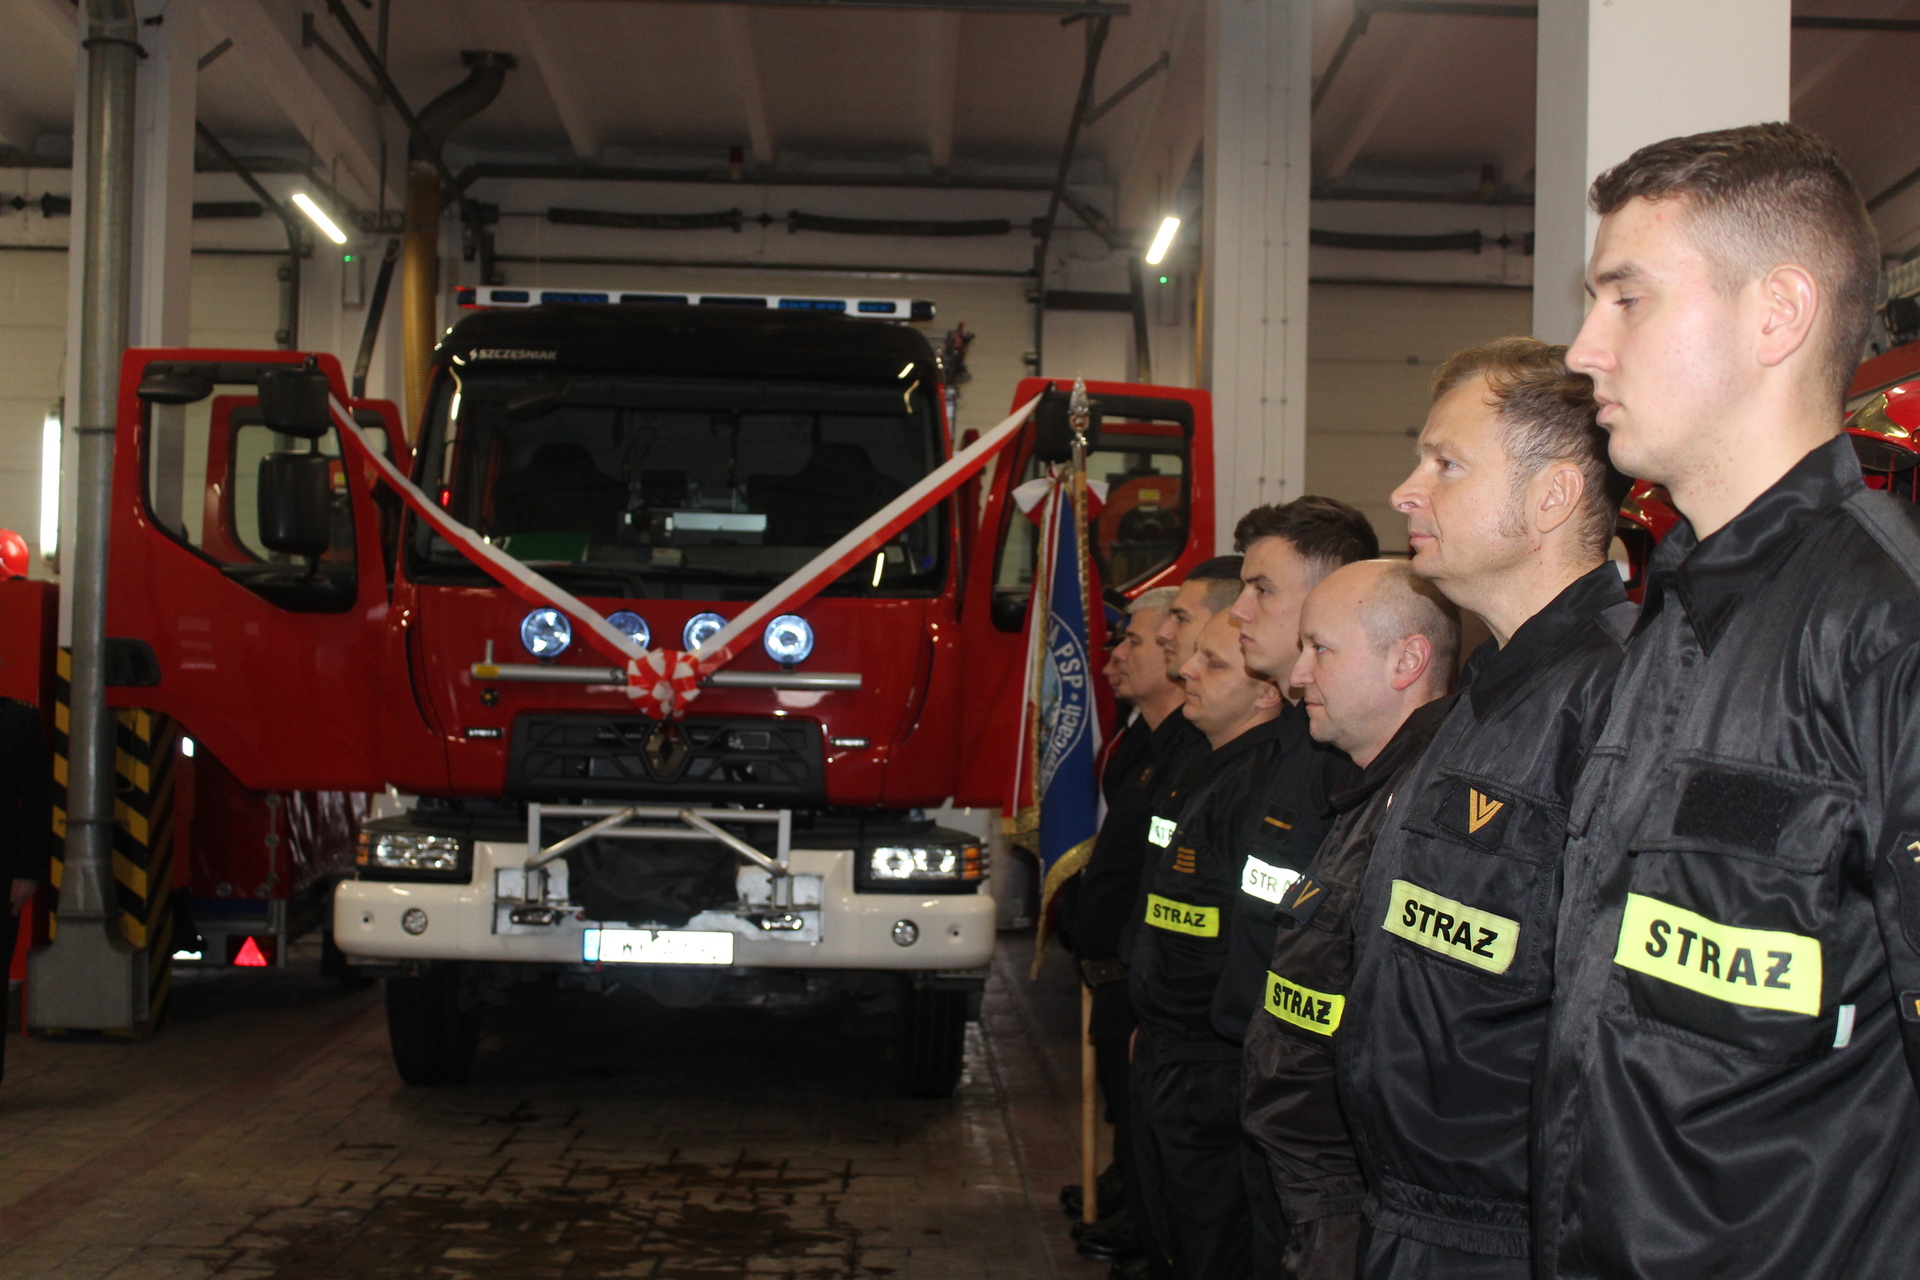 Nowy wóz polkowickich strażaków już oficjalnie (FOTO)